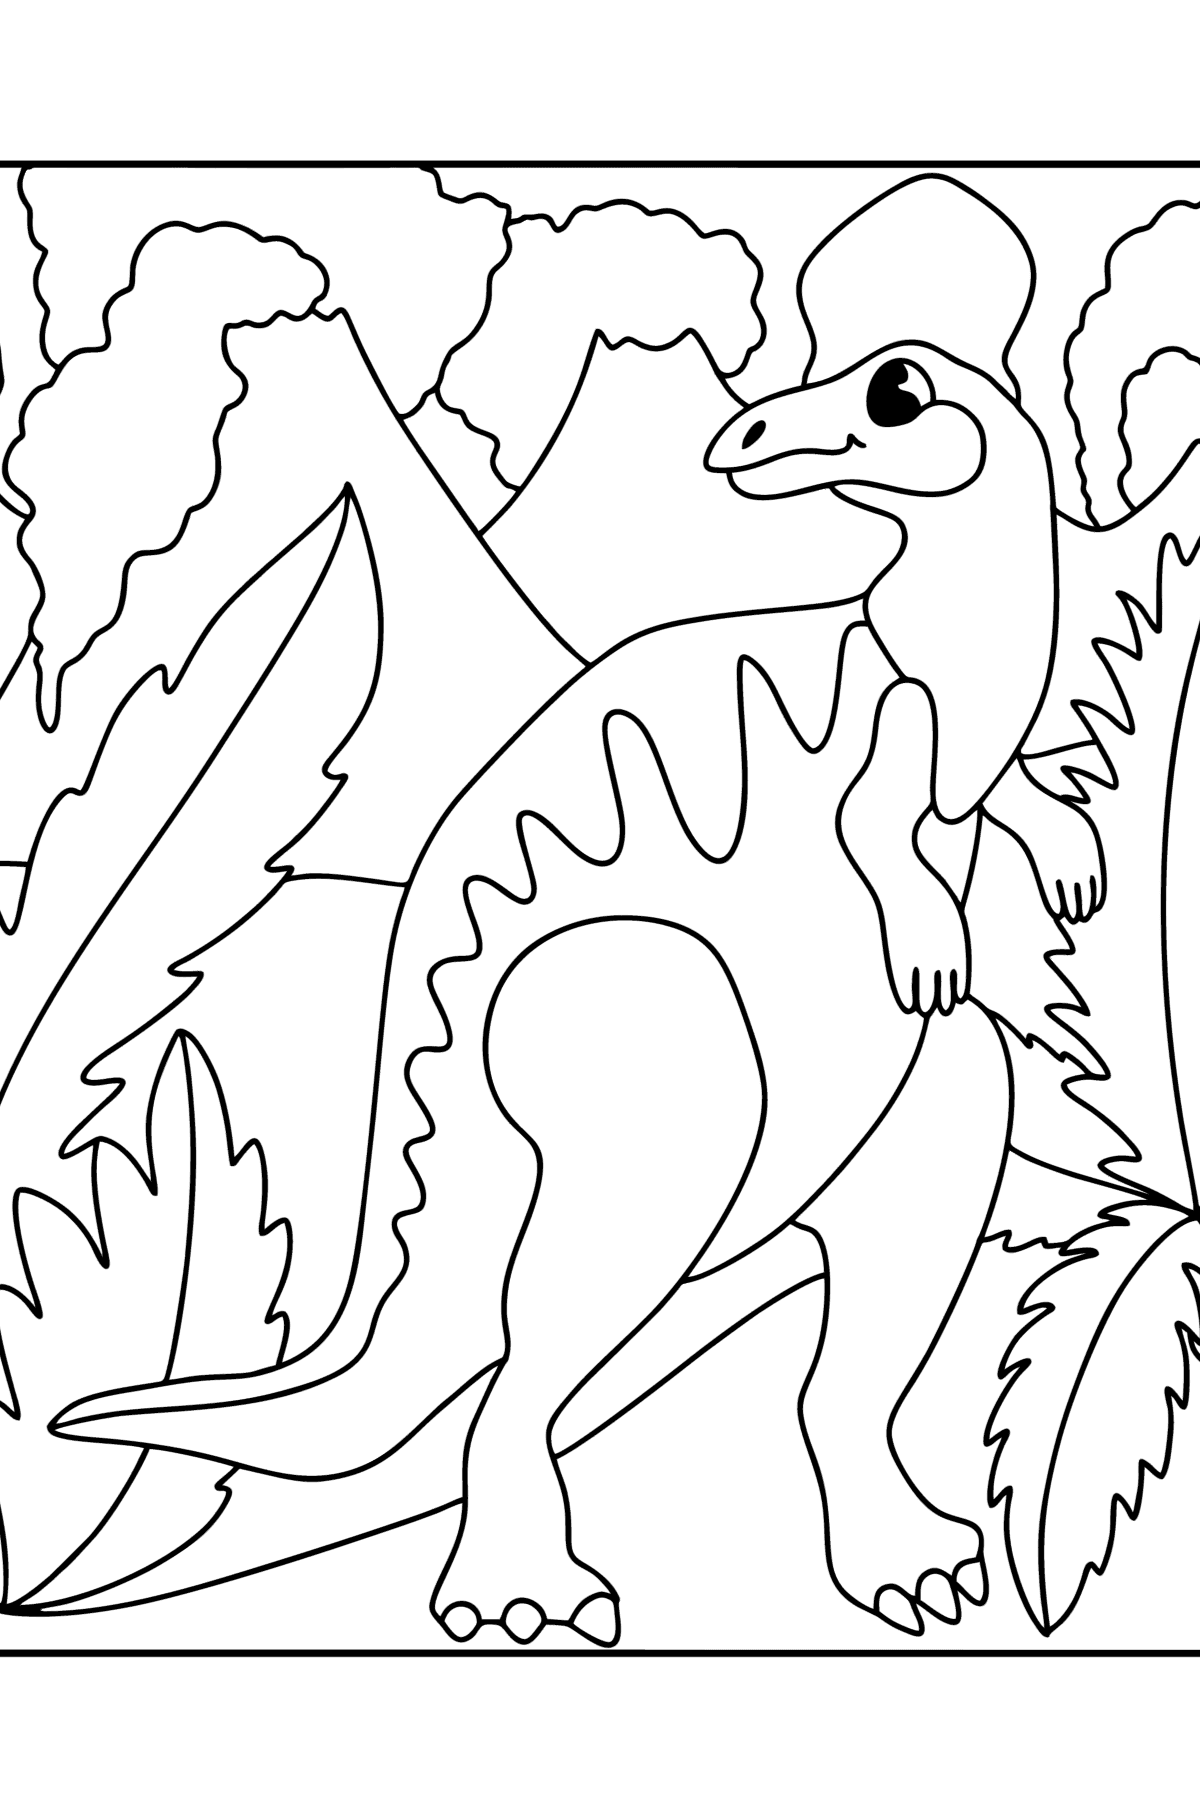 Desenho de Hadrossauro para colorir - Imagens para Colorir para Crianças